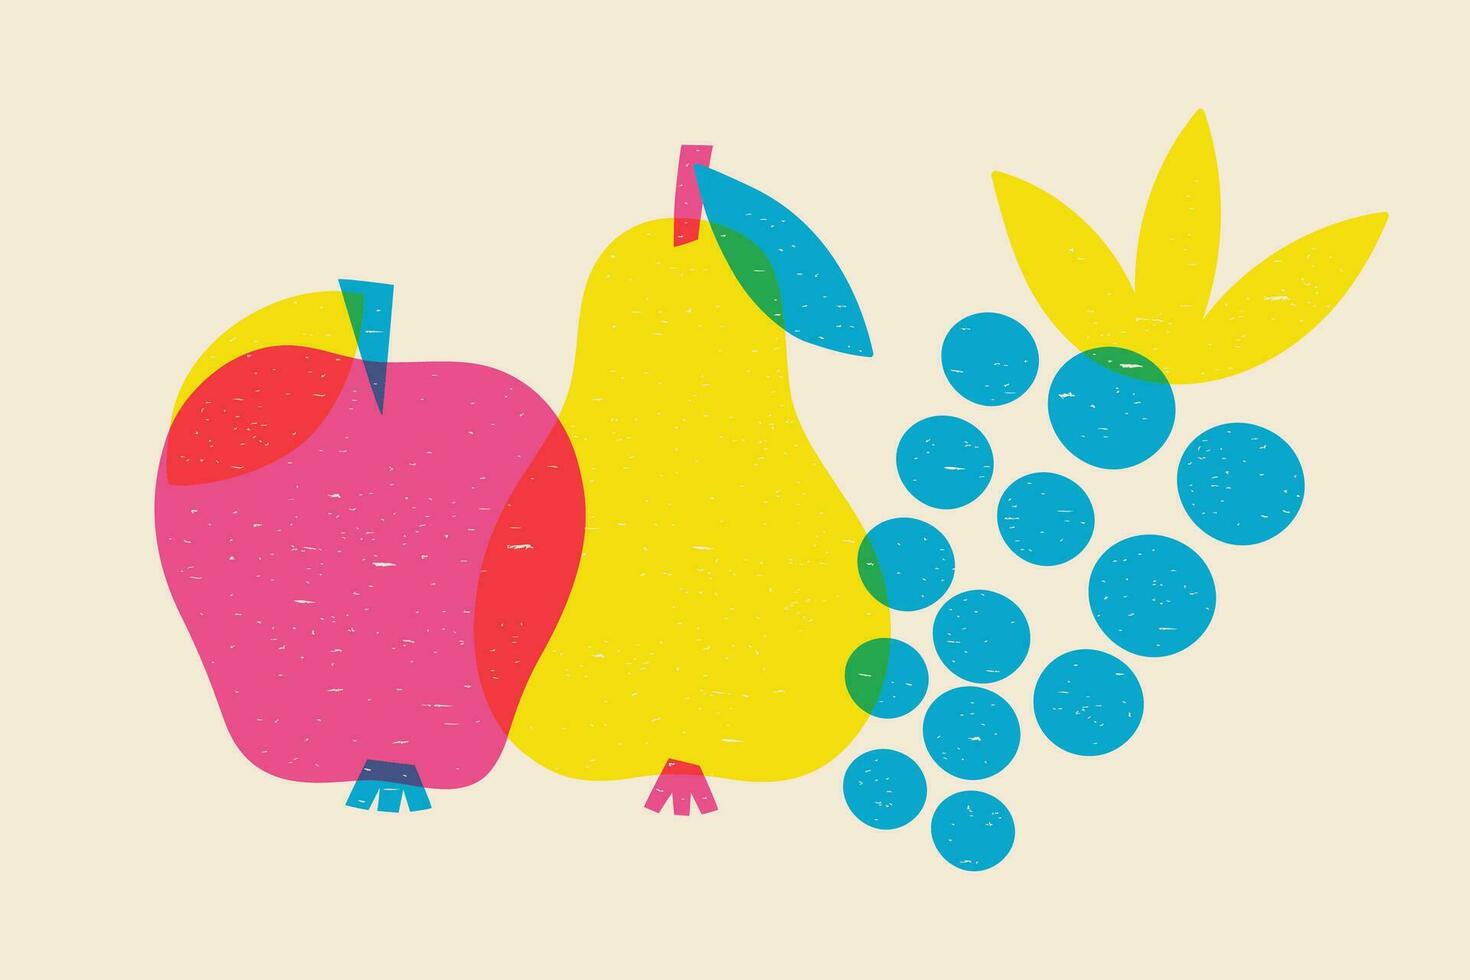 póster con frutas manzana, Pera y uvas en risografía estilo. vector gráficos.